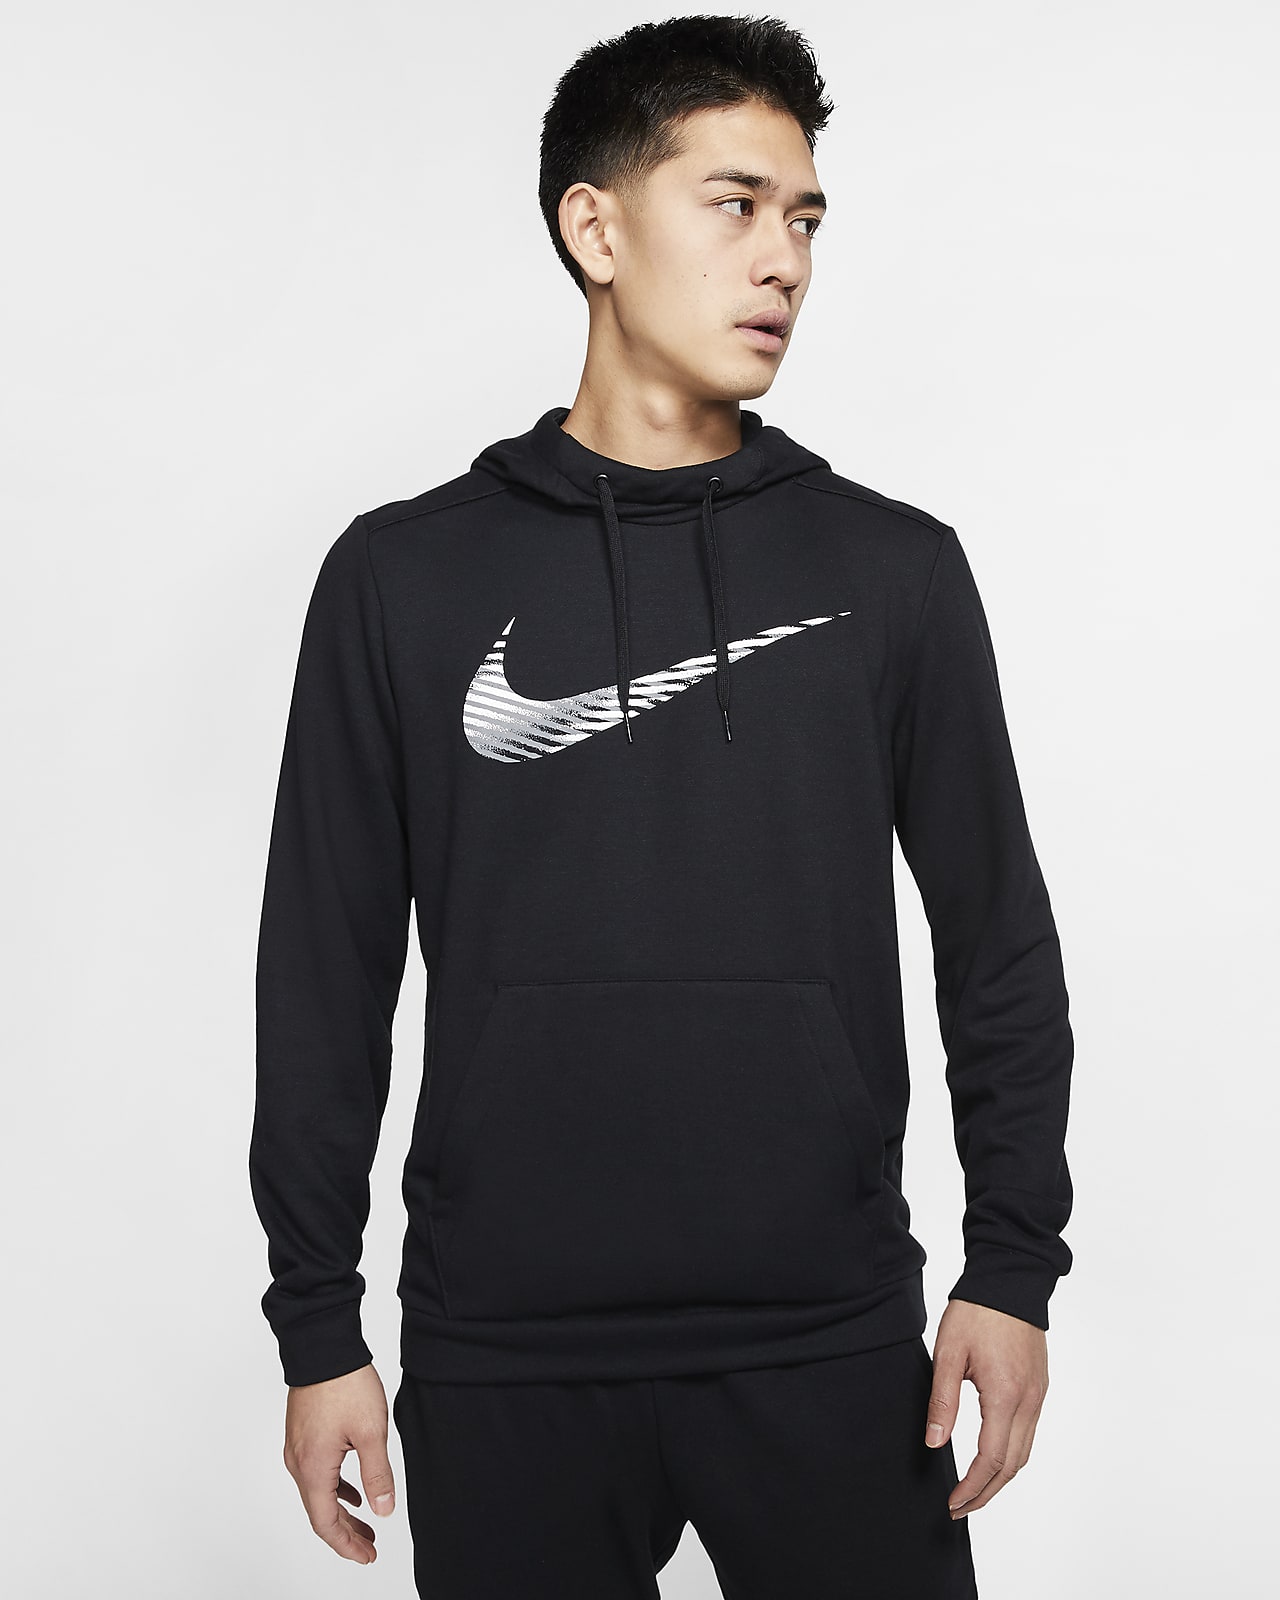 Felpa pullover da training con cappuccio Nike Dri-FIT - Uomo. Nike CH